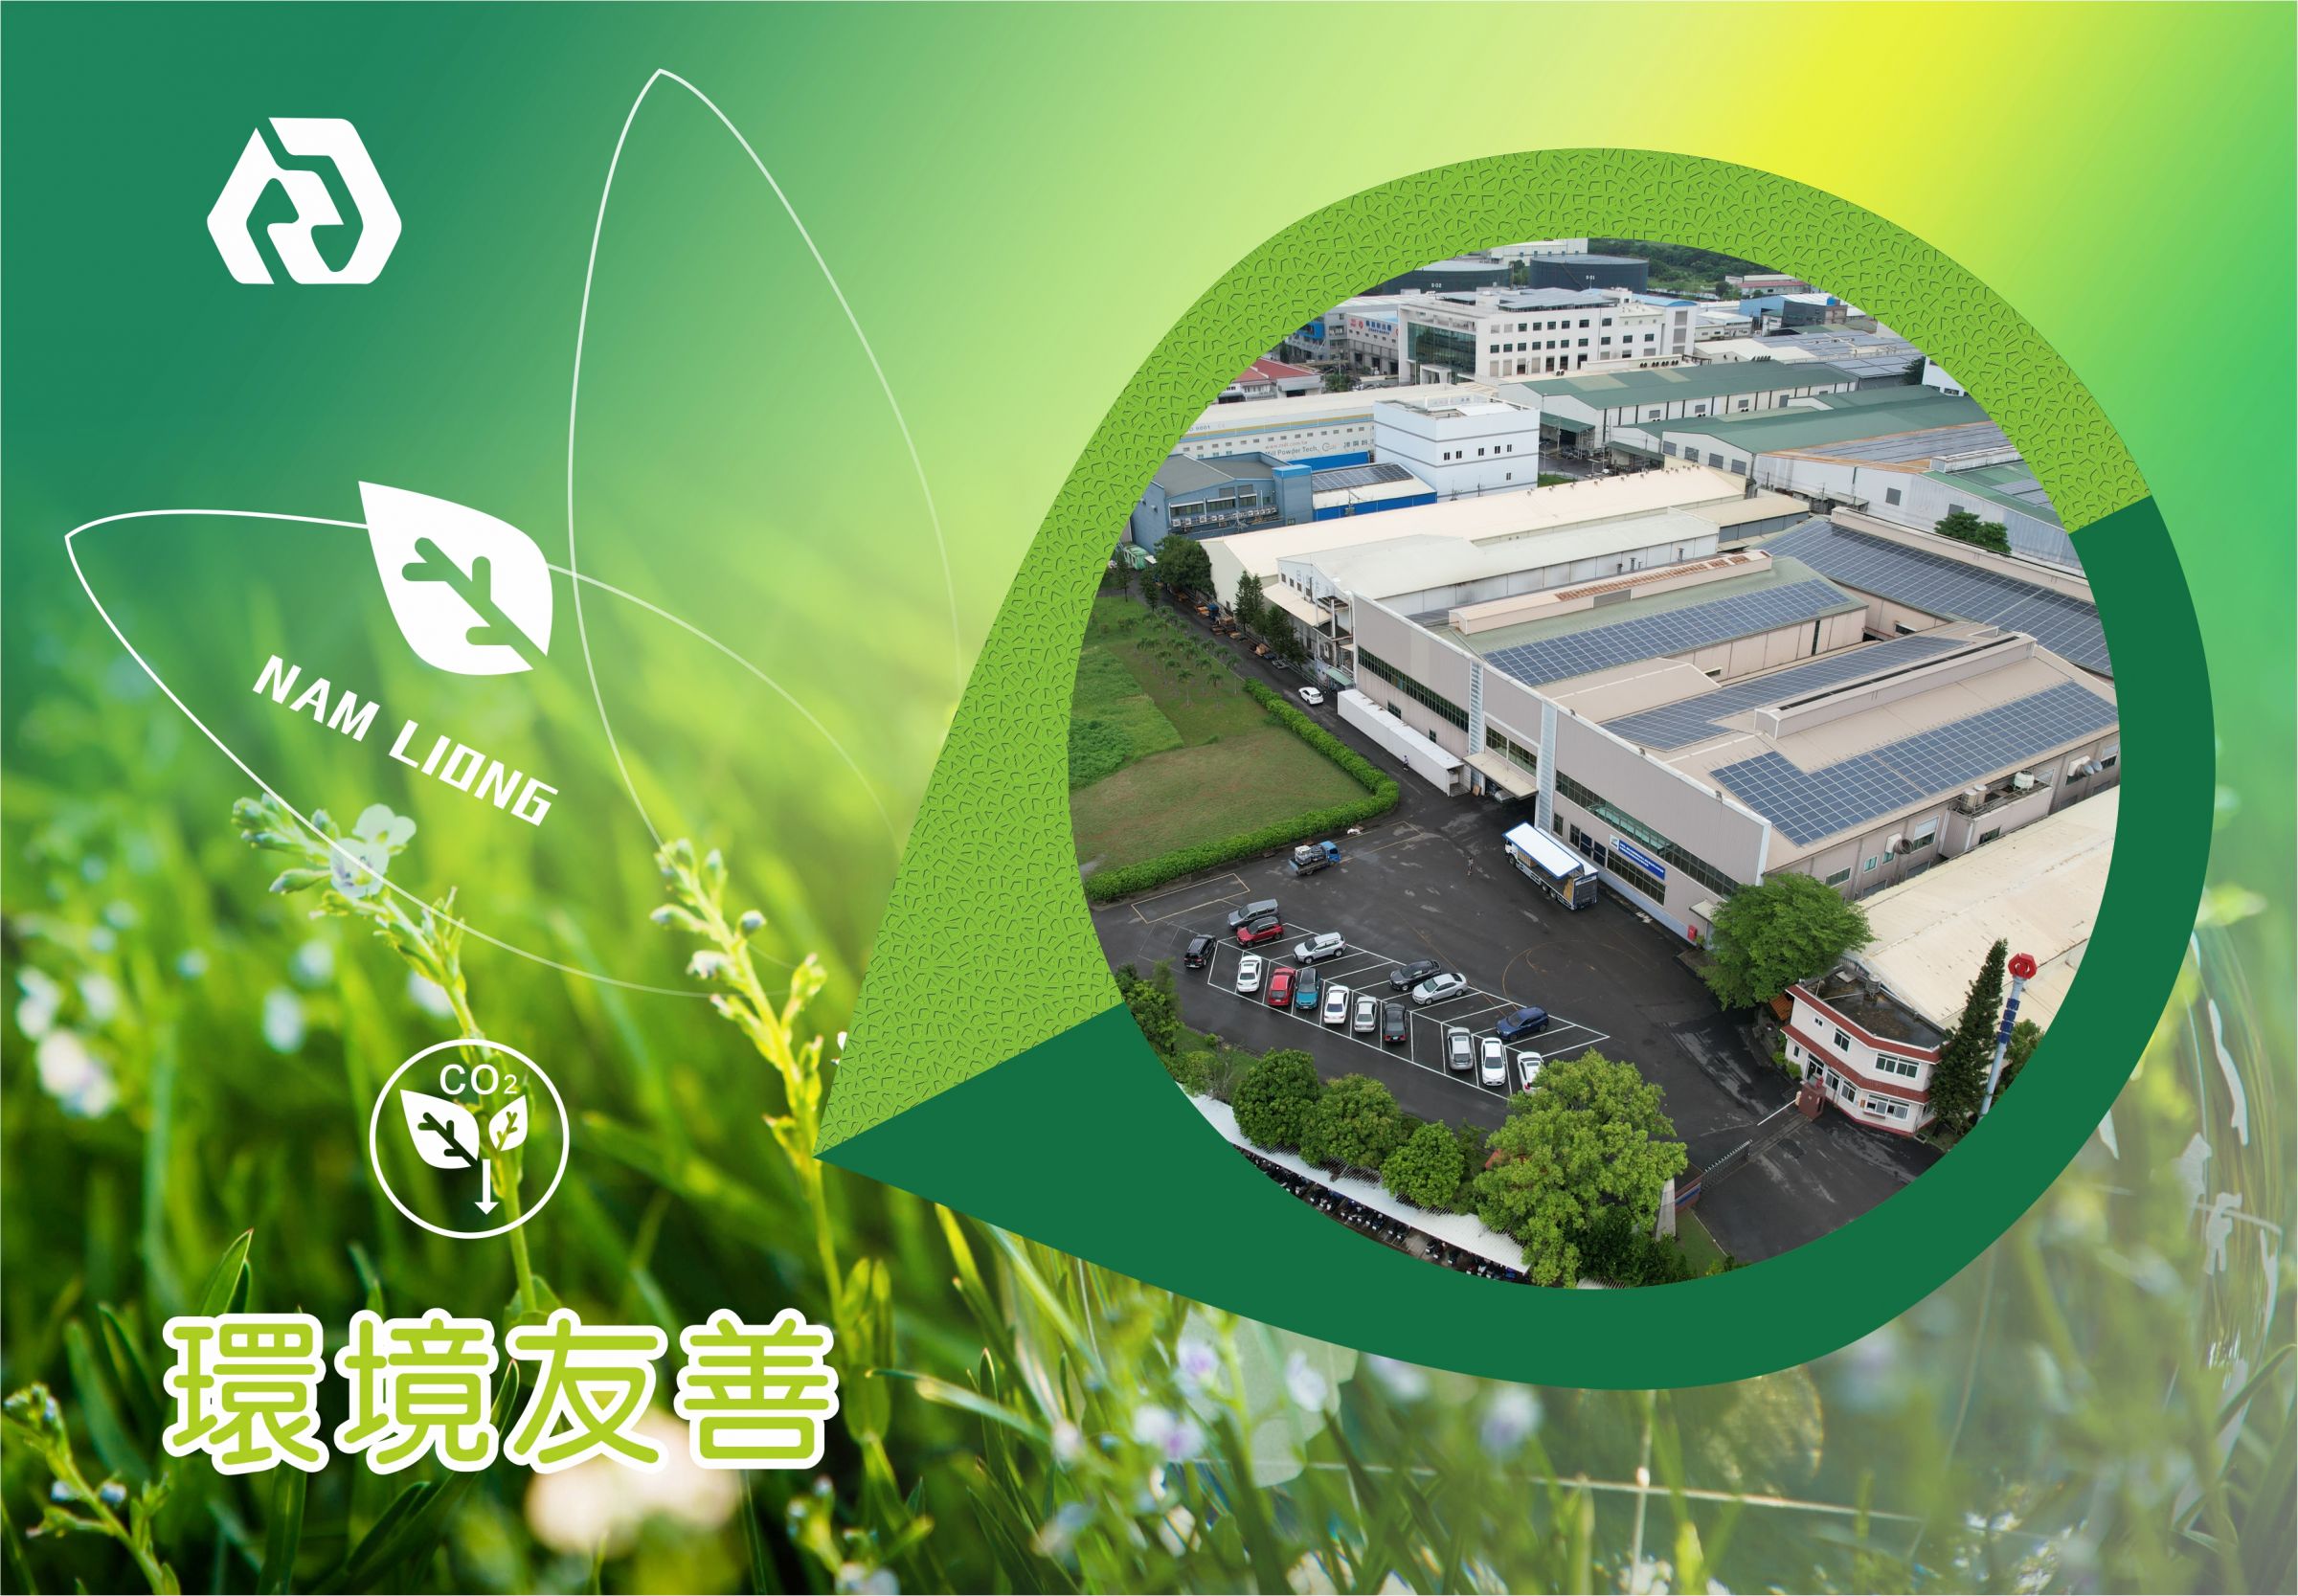 Ochrona środowiska i zrównoważony rozwój Nam Liong Global